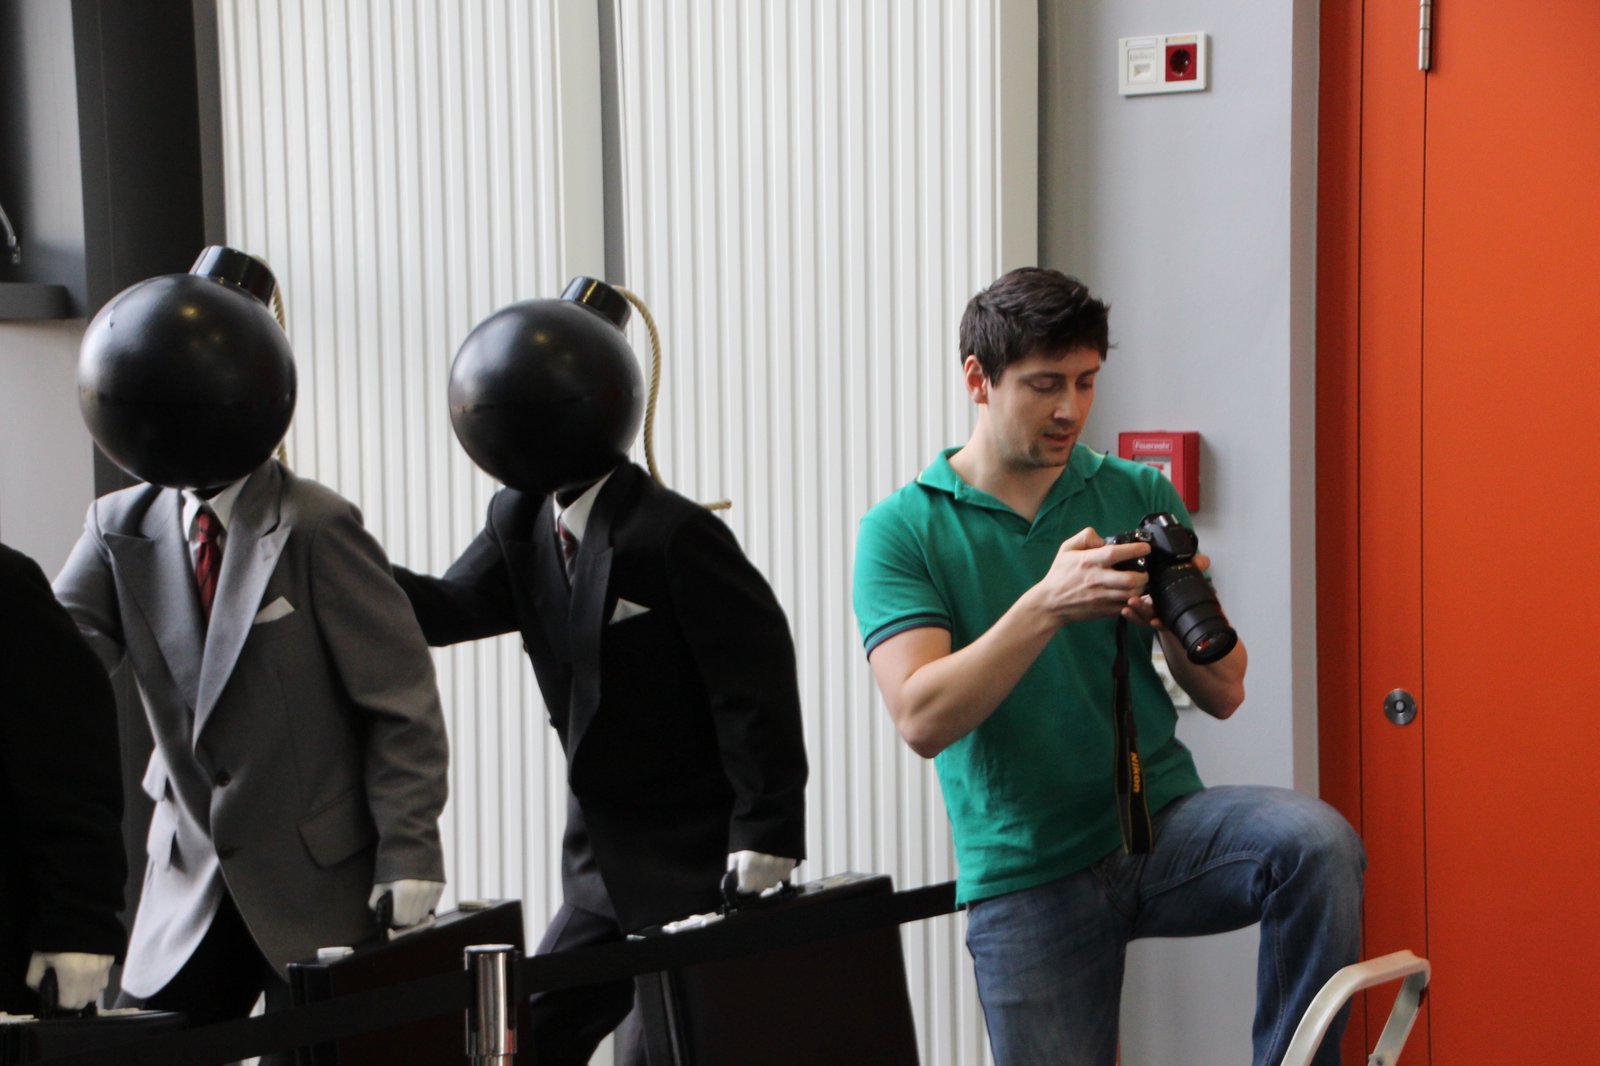 Das Bild zeigt eine Fotografen neben zwei Installationen, die wie die Musiker von Daft Punk aussehen.